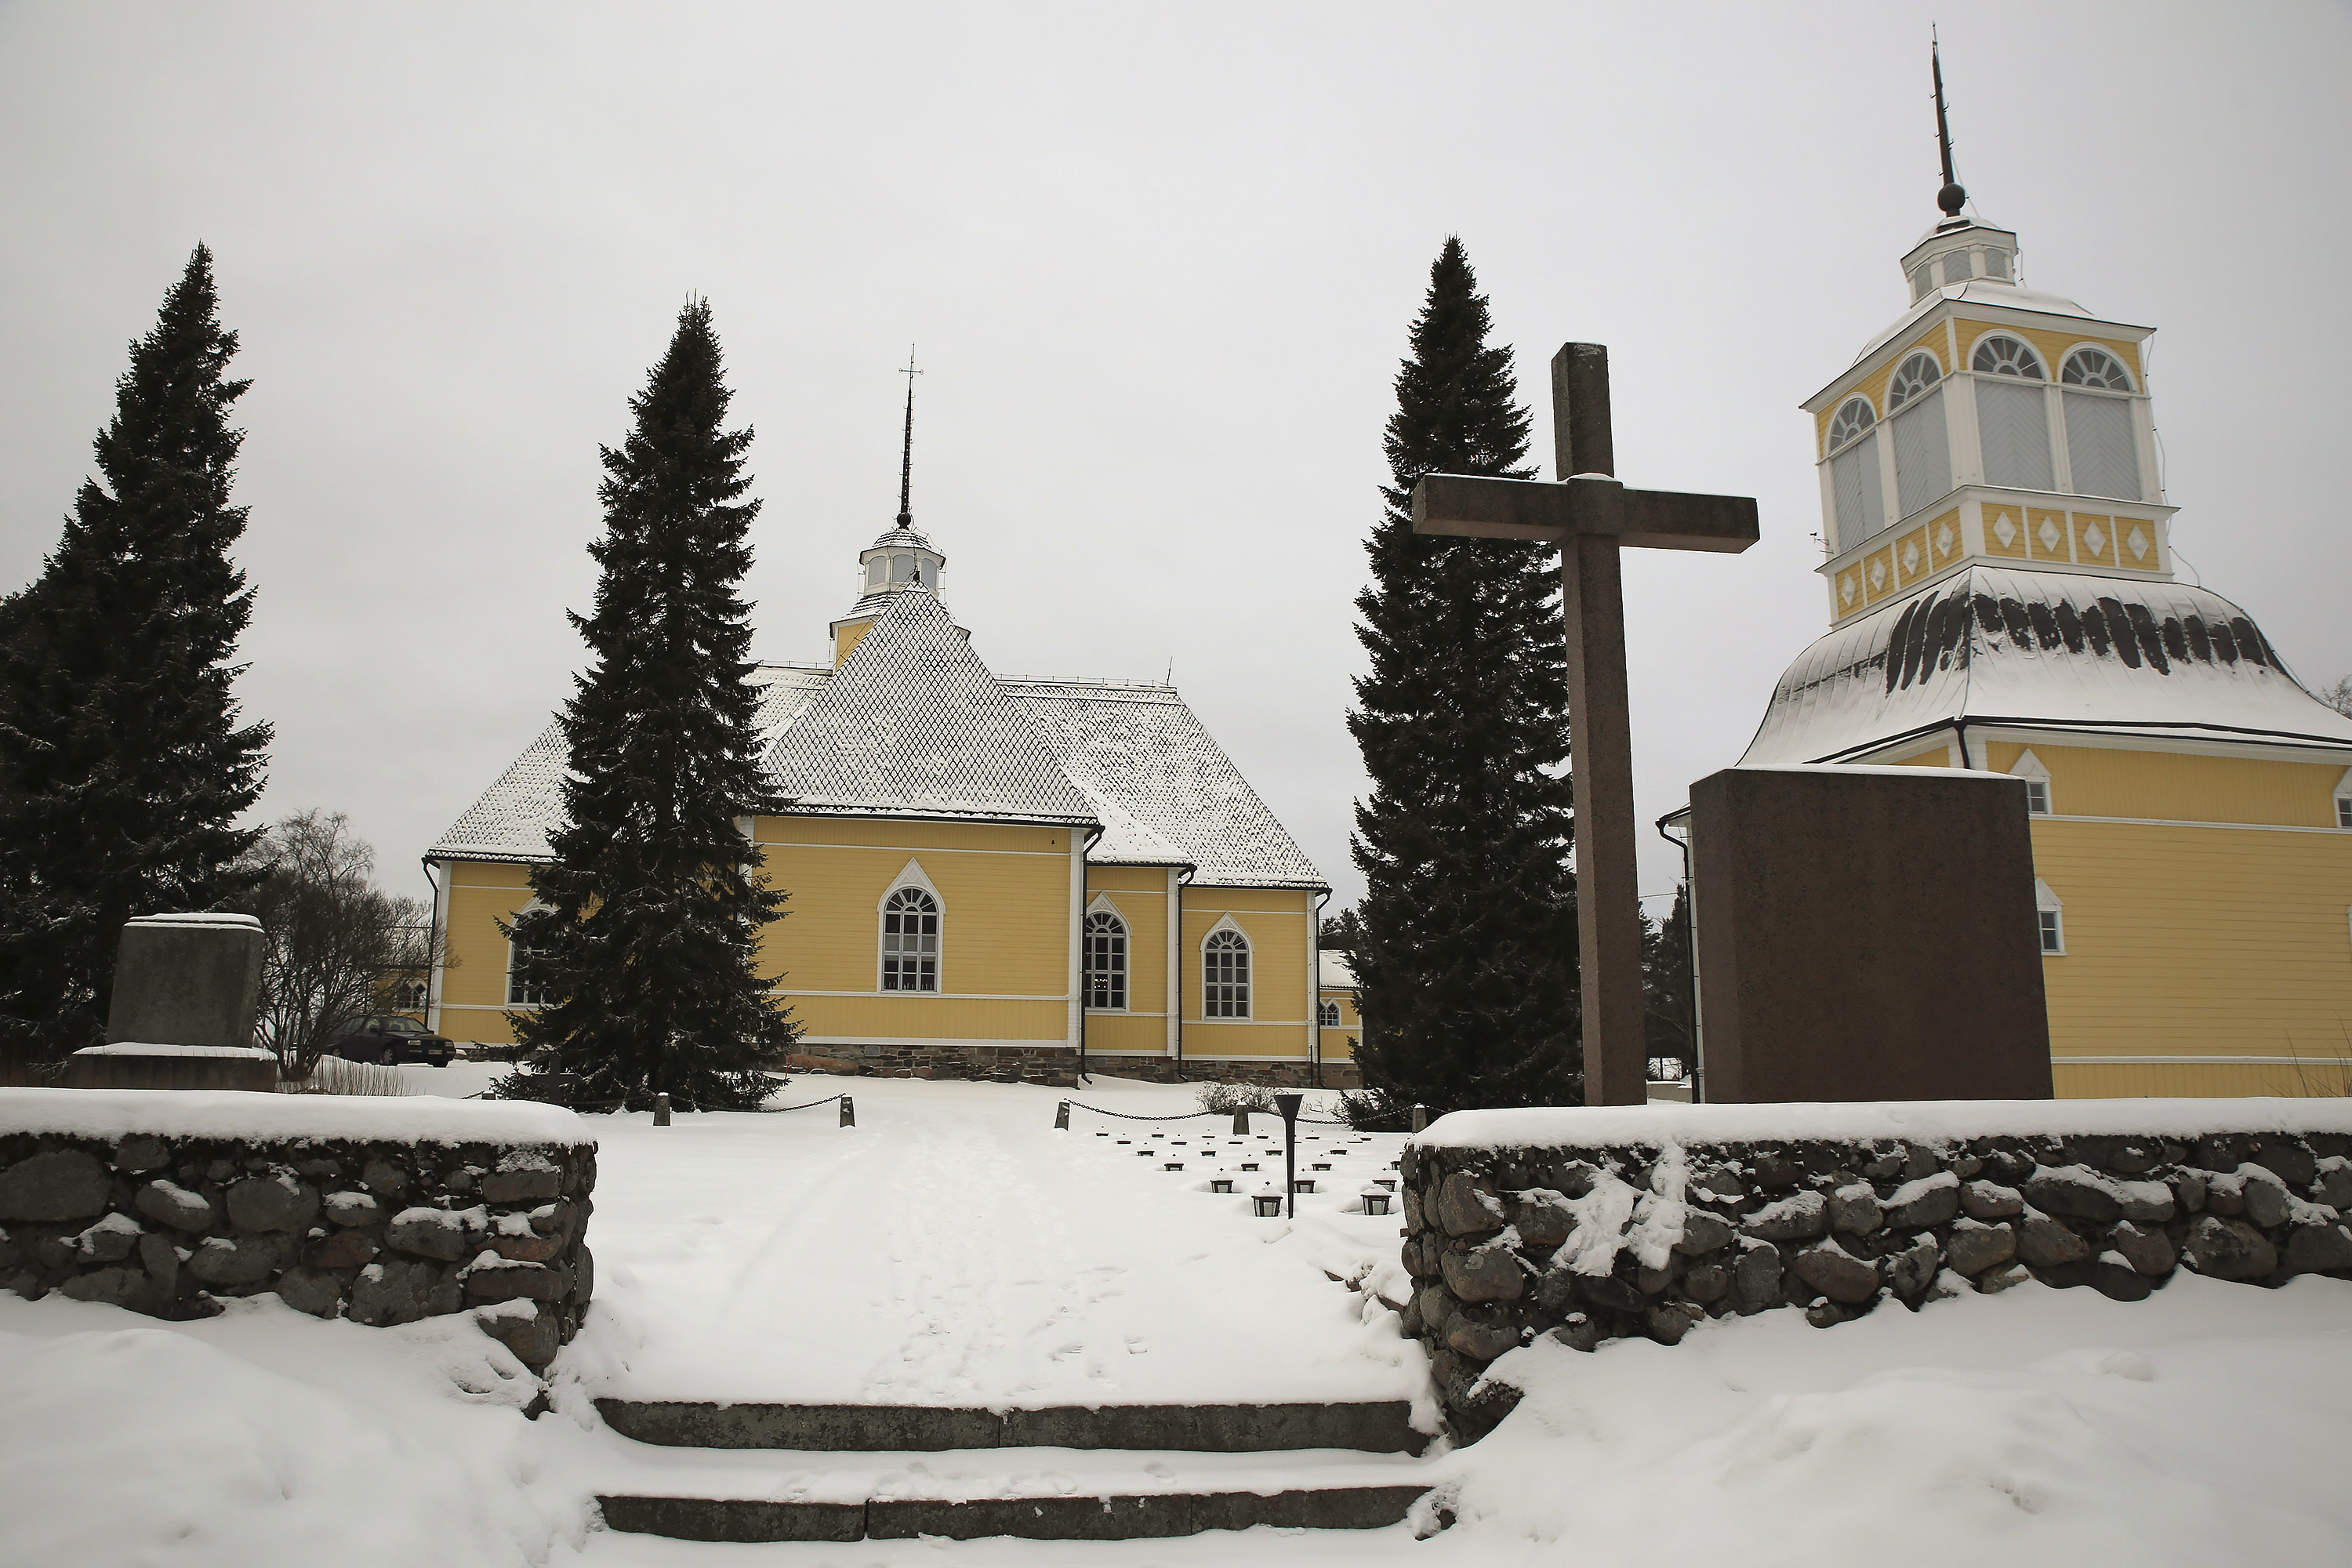 Lochteå kyrka och klockstapel lyser gula i det vita vinterlandskapet.